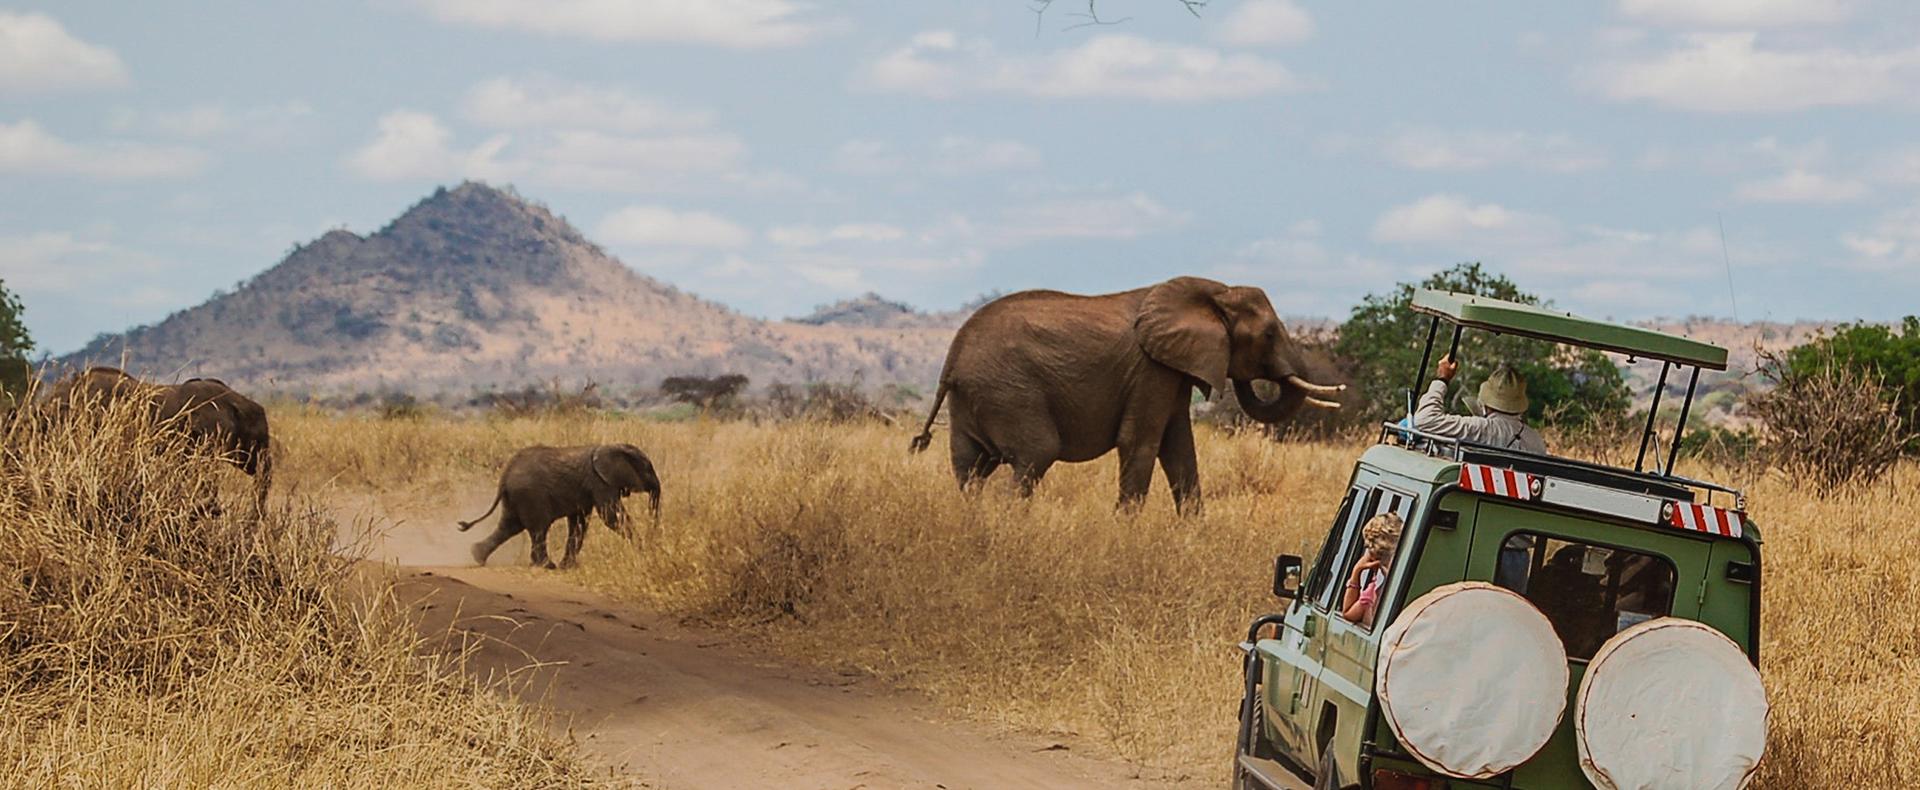 Un safari n'est pas un voyage comme les autres ...